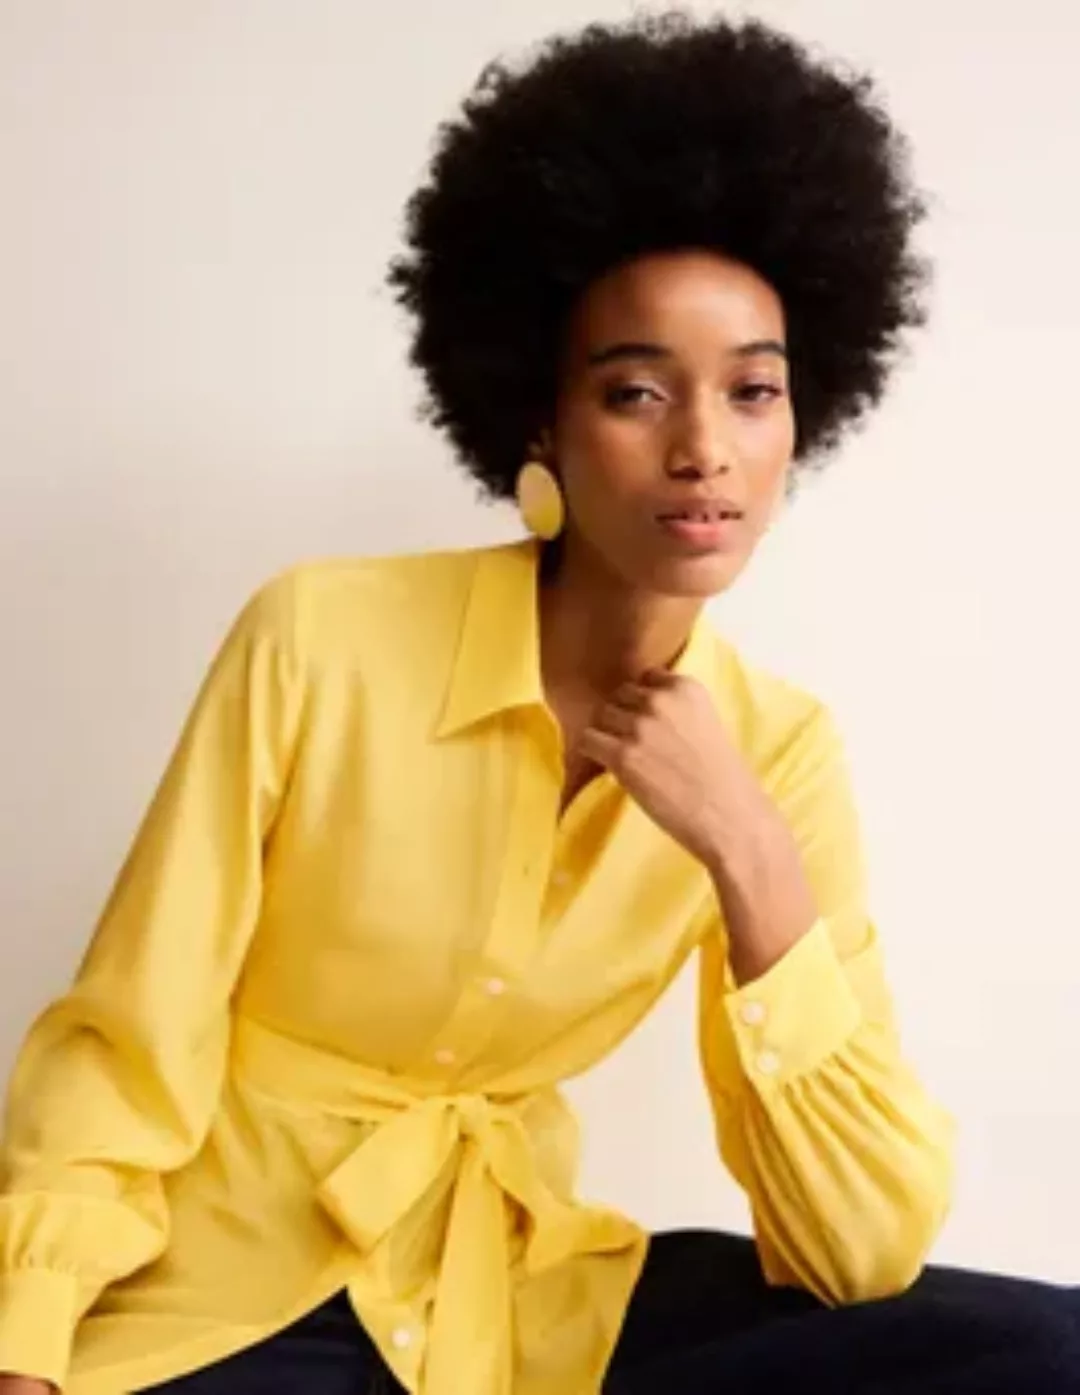 Seidenhemd mit Bindegürtel Damen Boden, Lebendiges Gelb günstig online kaufen